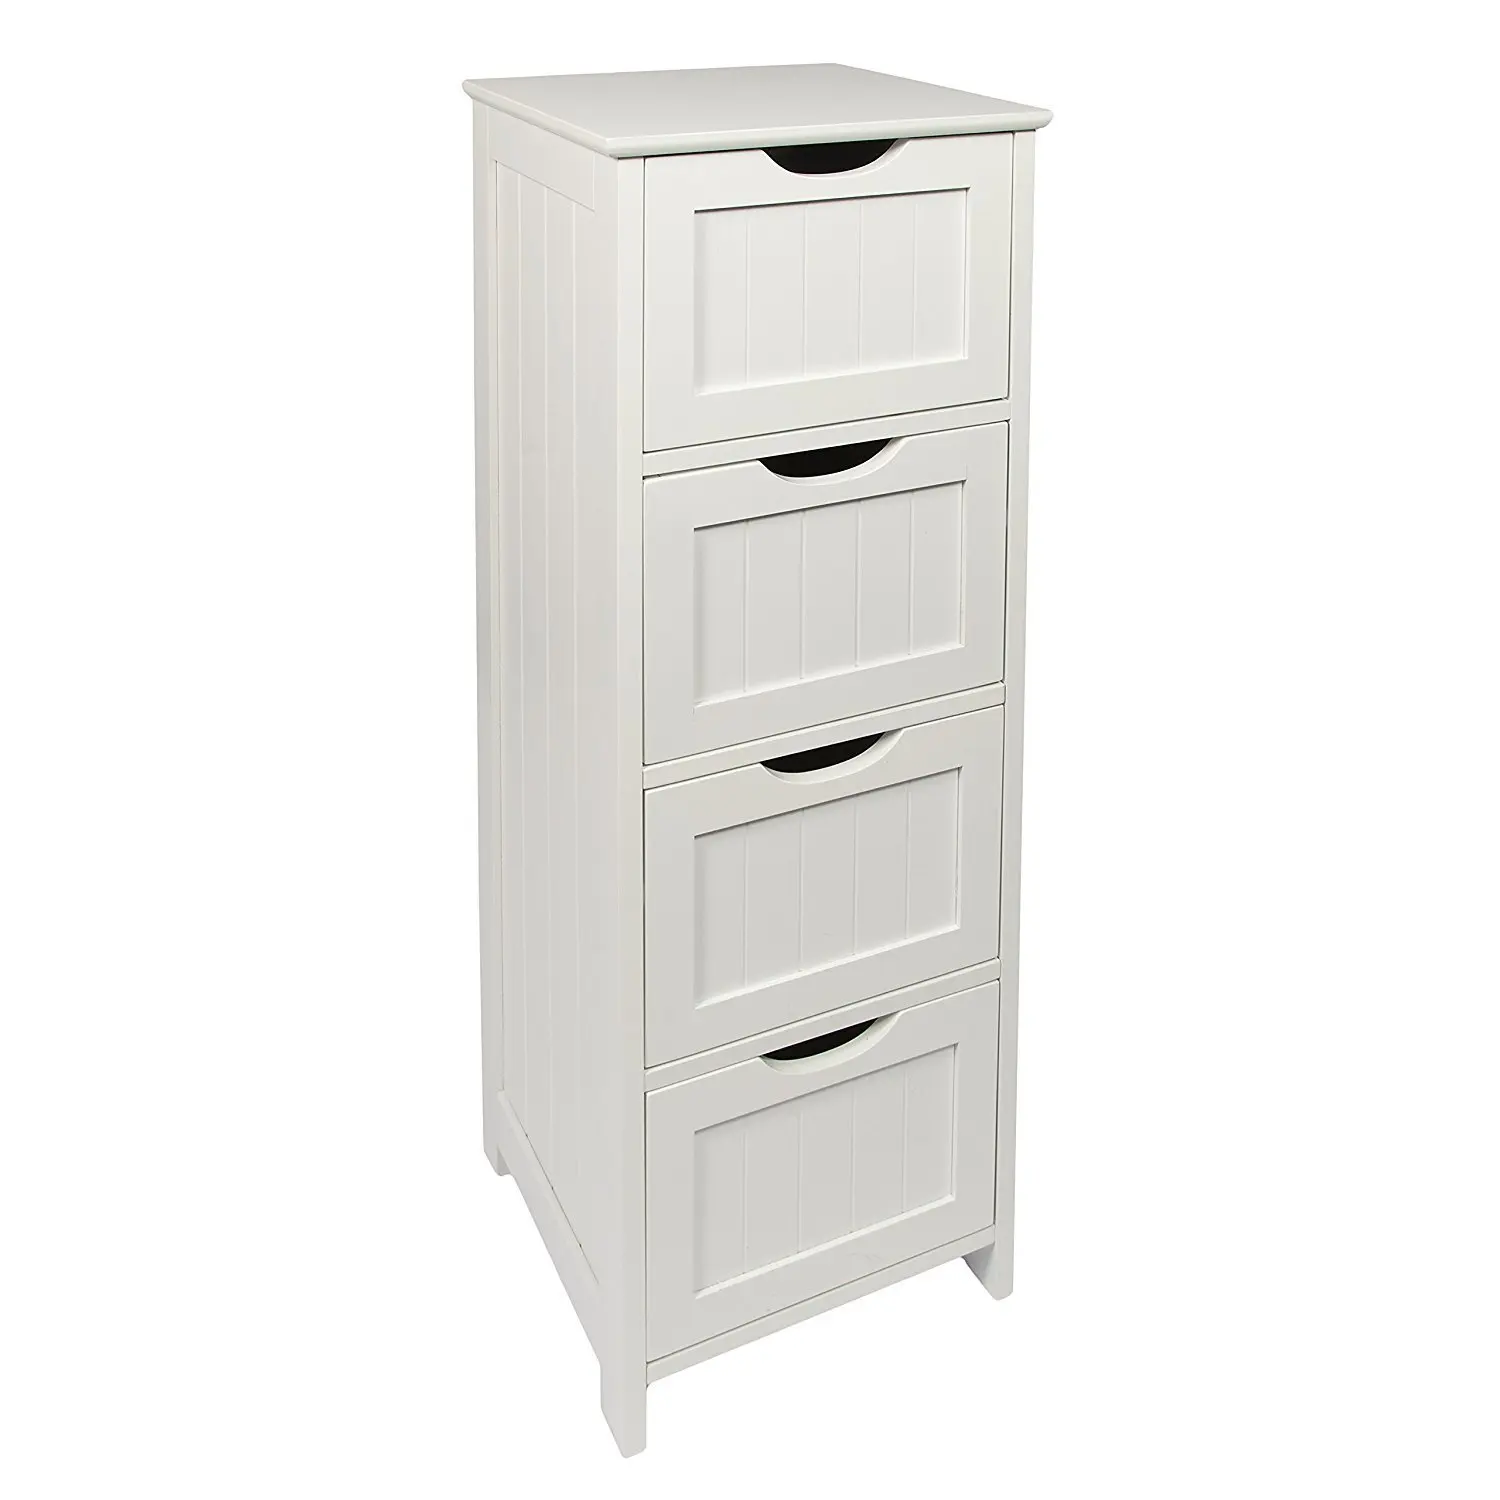 White Wooden Mdf 4 Drawer Floor Standing Bathroom Storage Cabinet